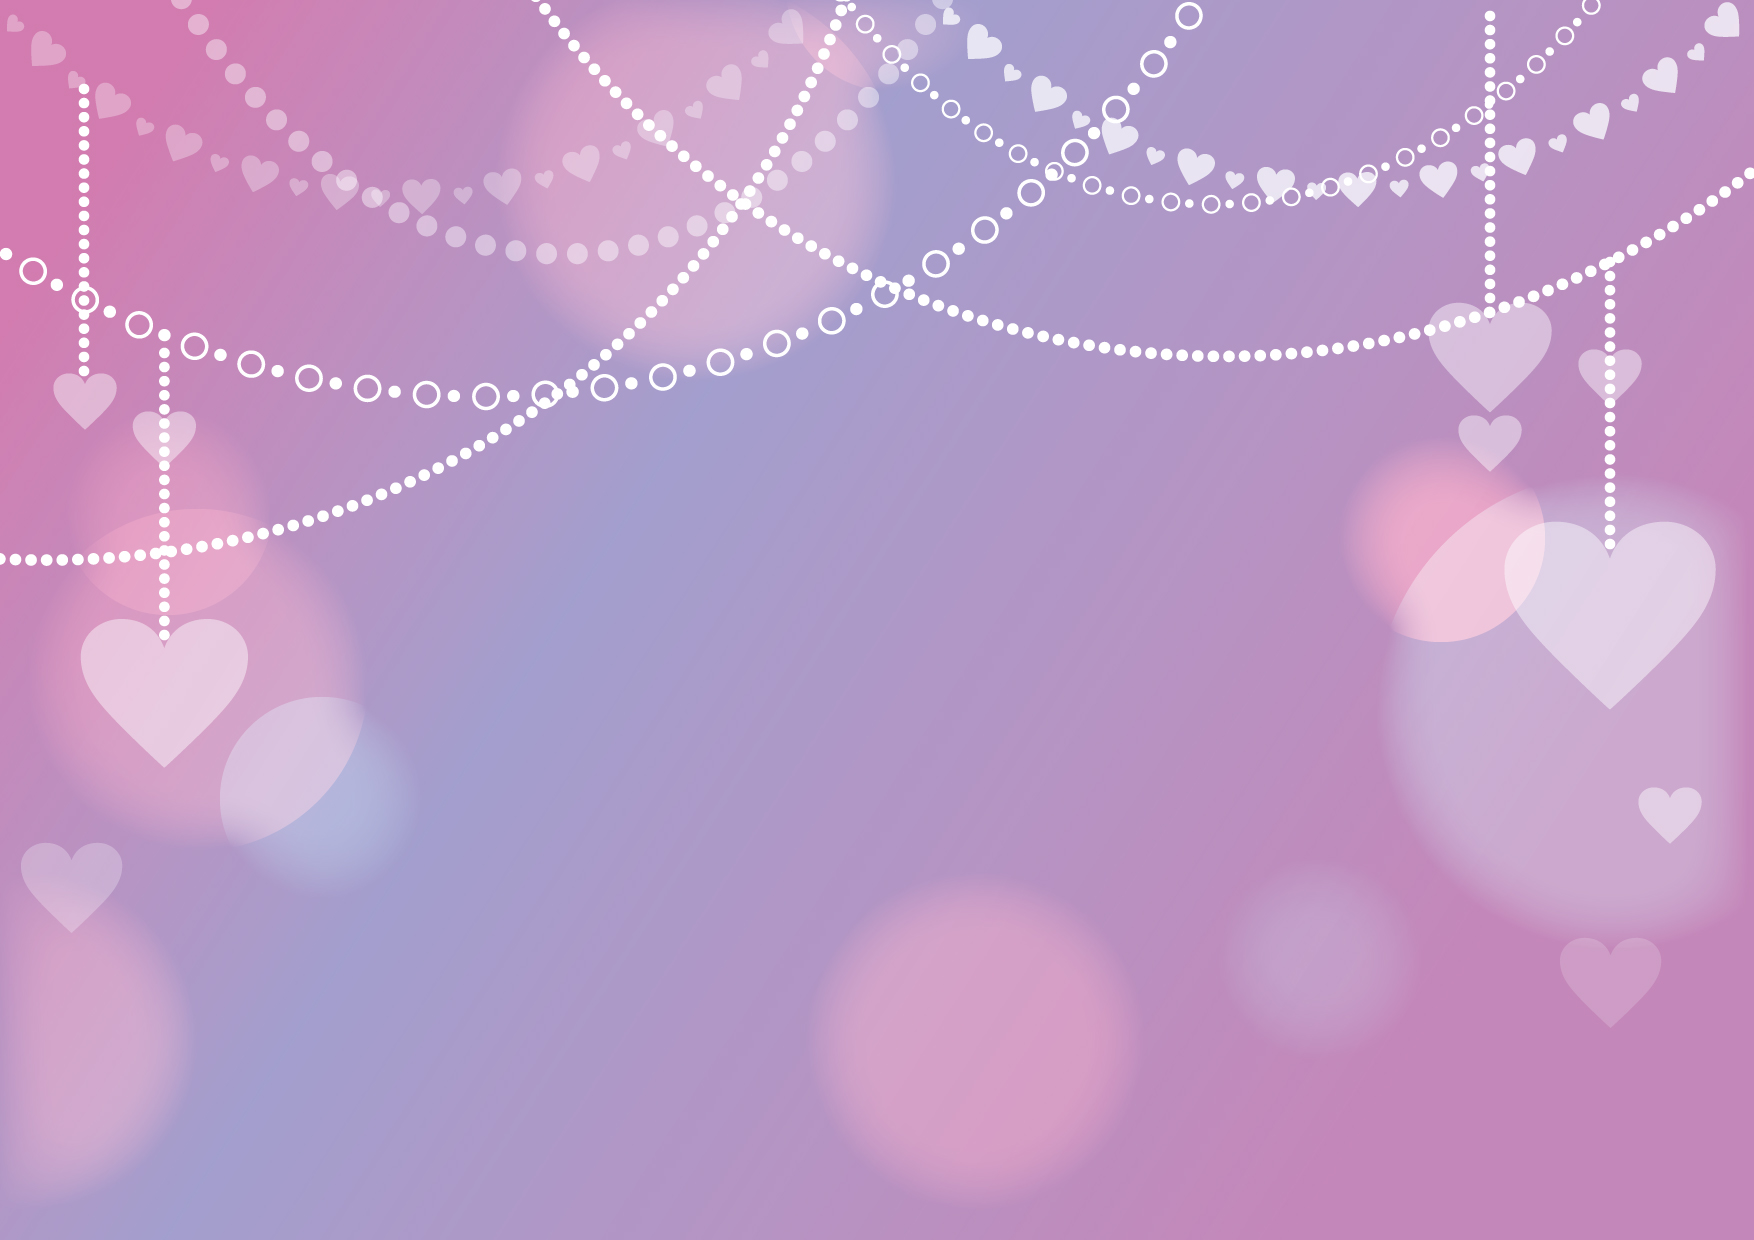 可愛いイラスト無料 ハート チェーン 背景 紫色 Free Illustration Heart Chain Background Purple イラストダウンロード